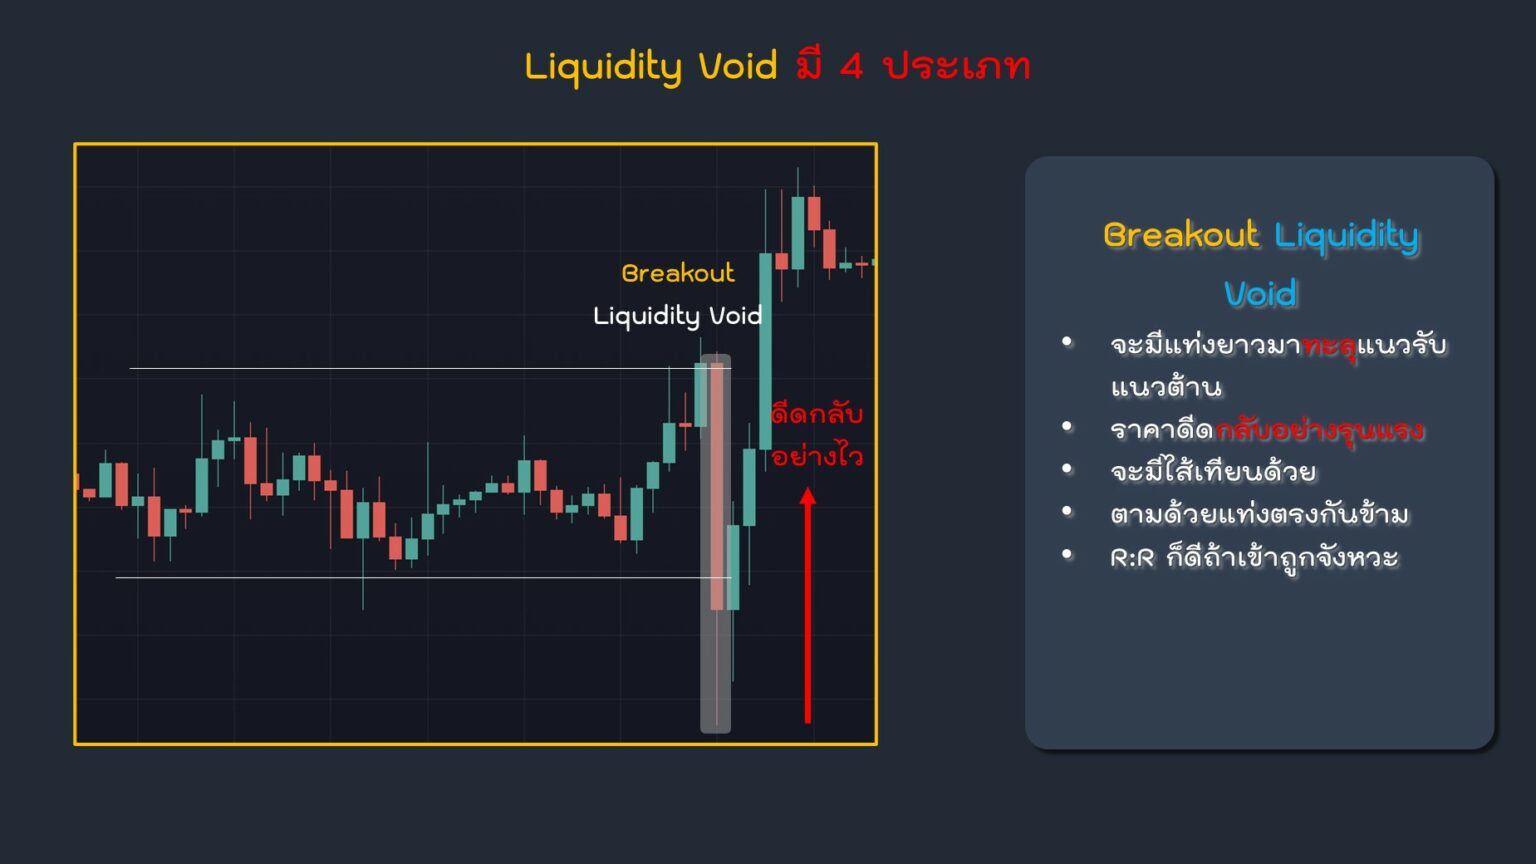 Liquidity Void ประเภท Breakout